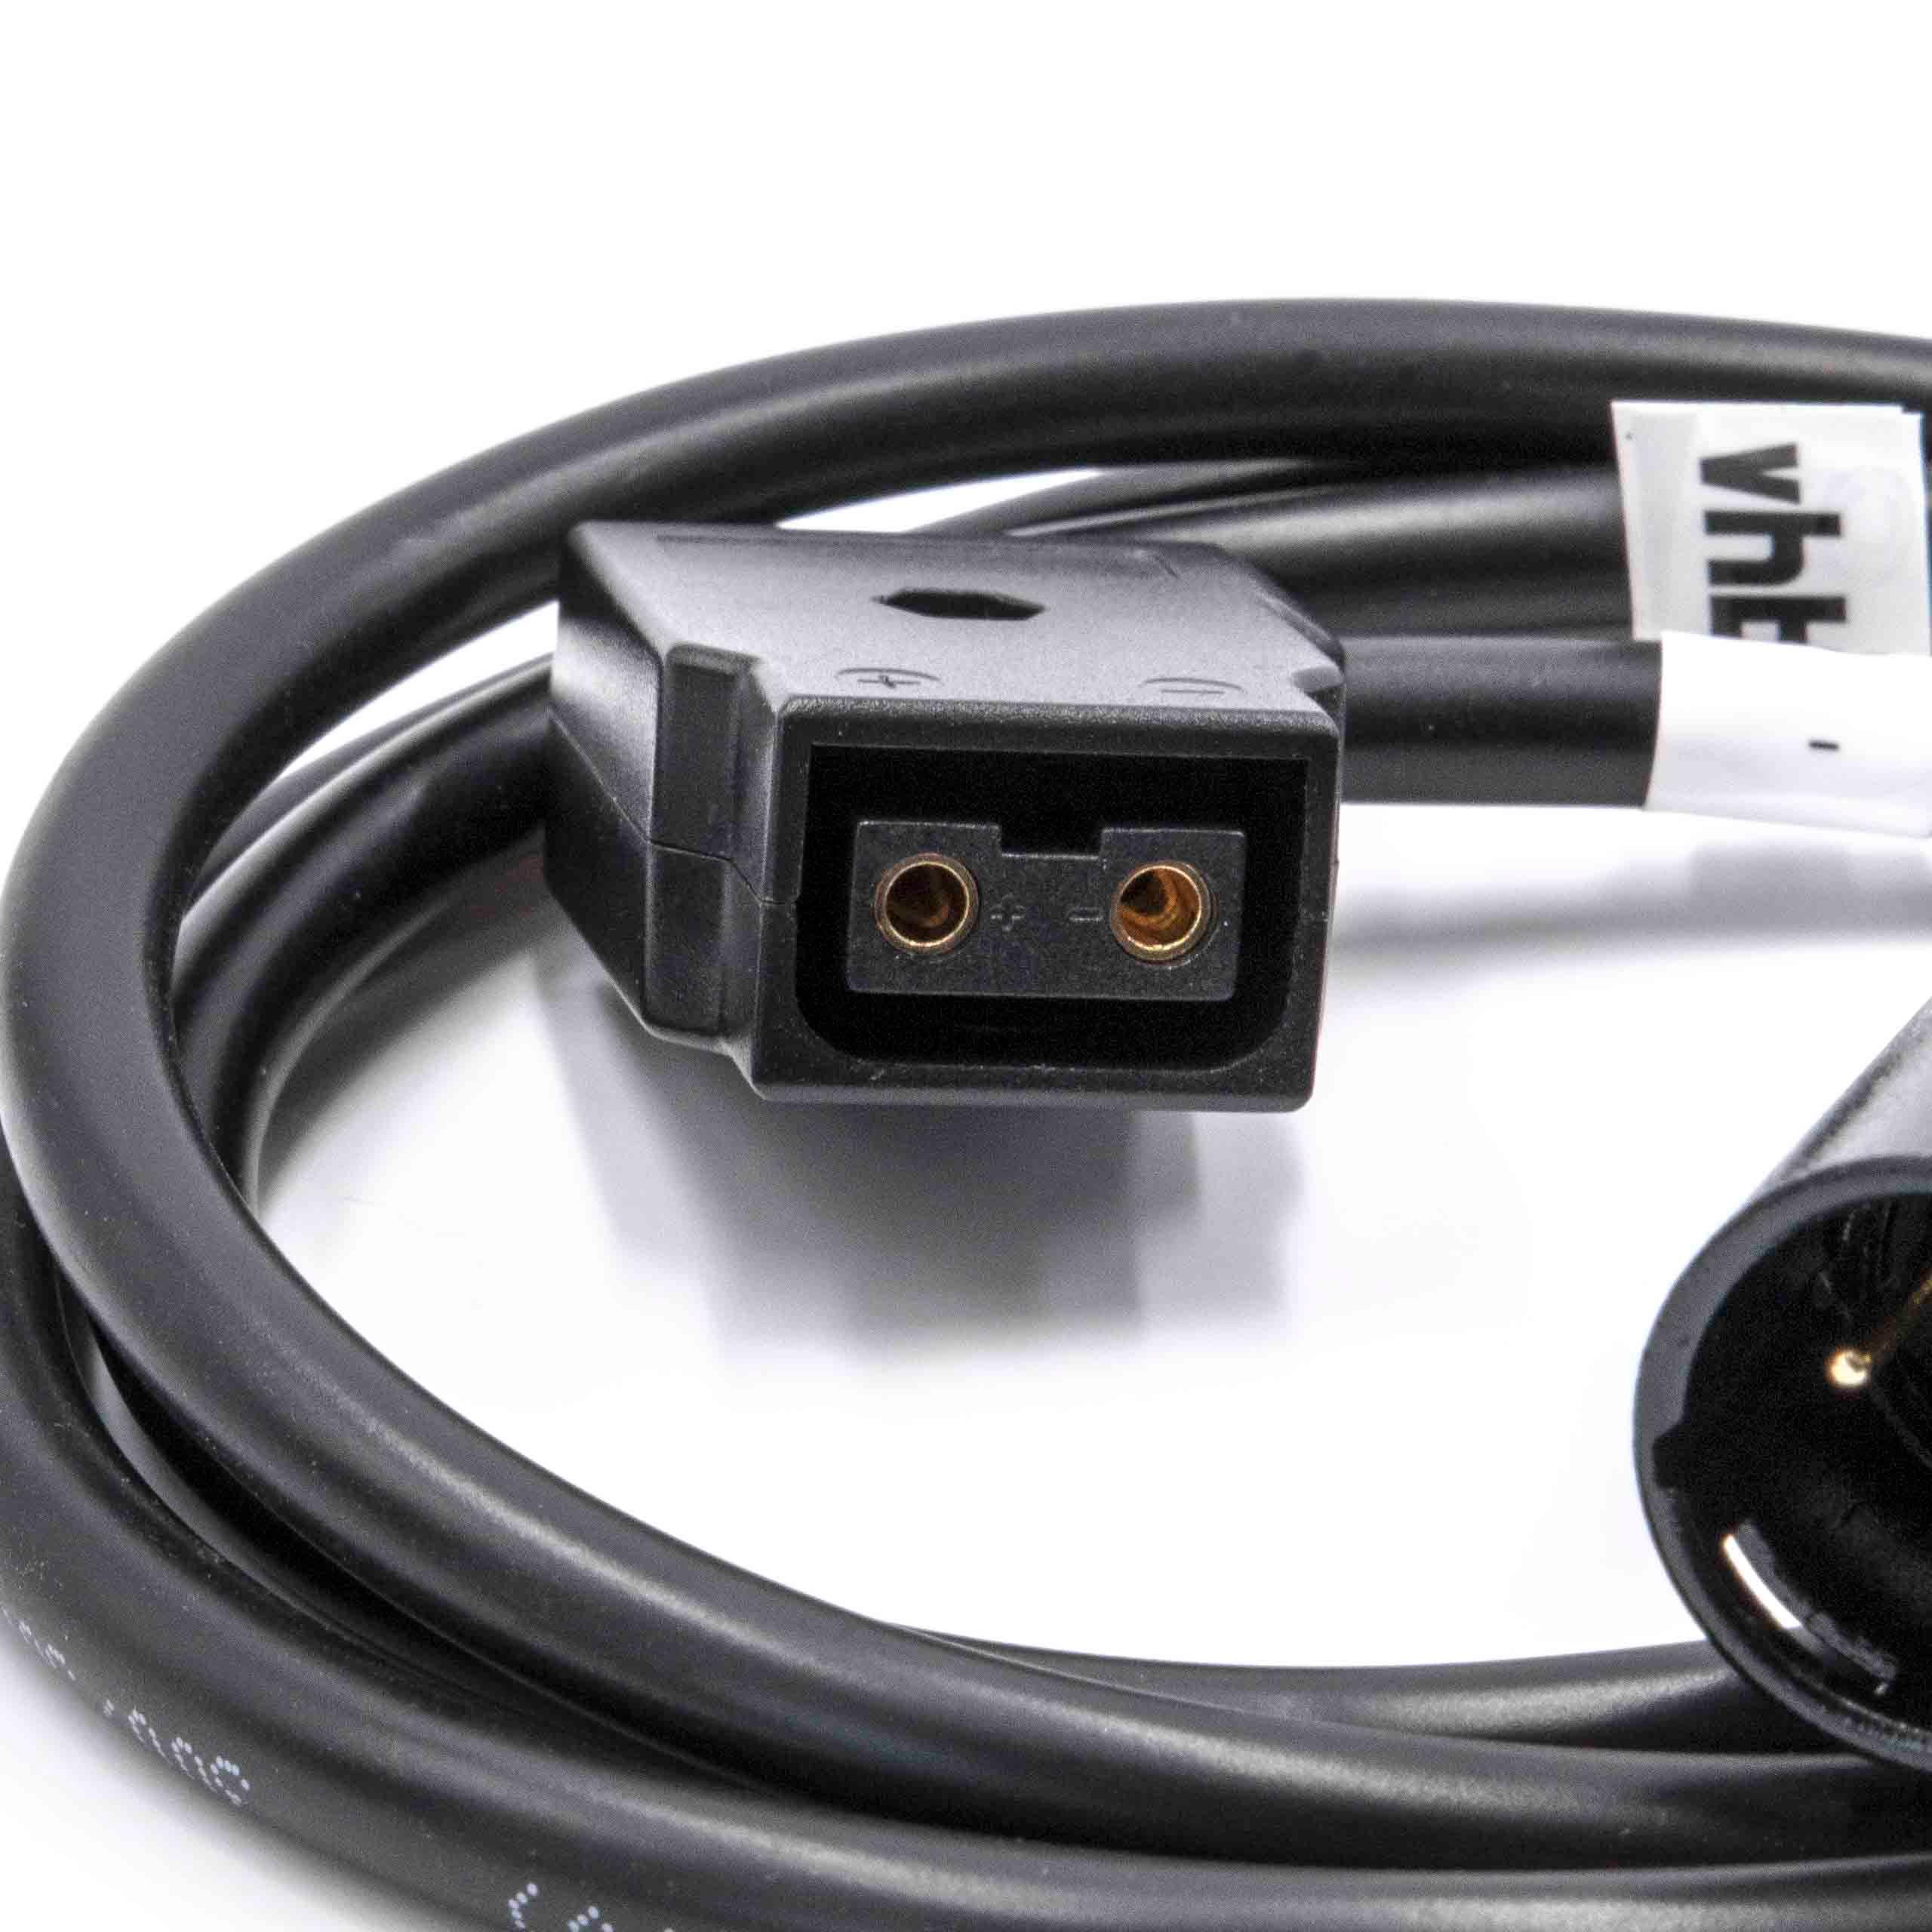 Cavo adattatore D-Tap (f) a XLR a 4 pin (m) per fotocamera Practilite ecc. - 1 m nero